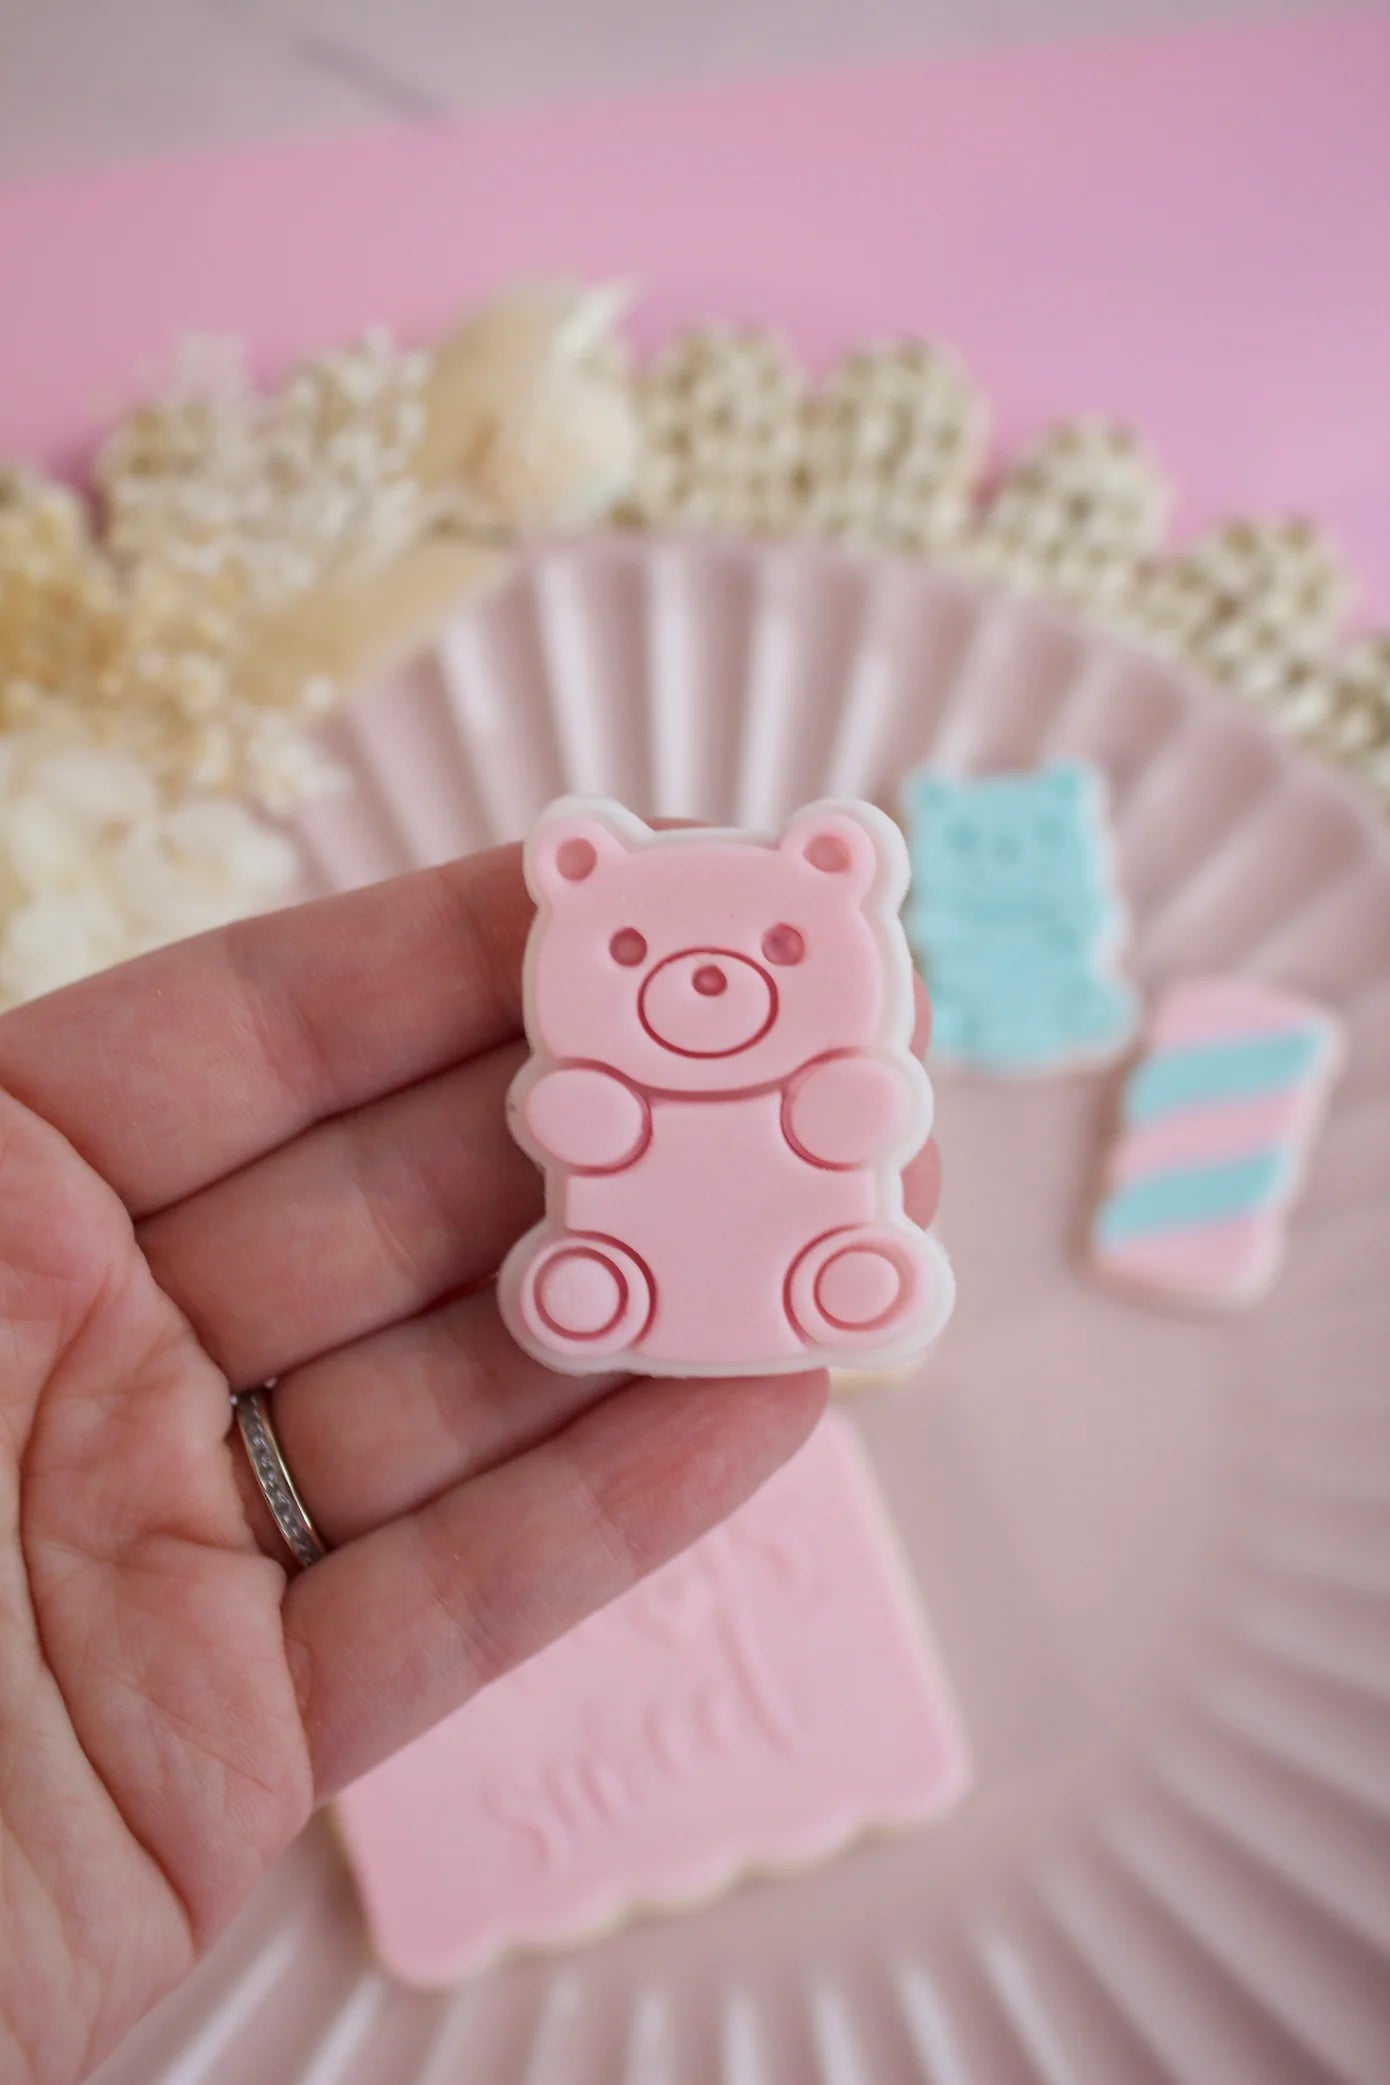 Mini bear candy + cookie cutter